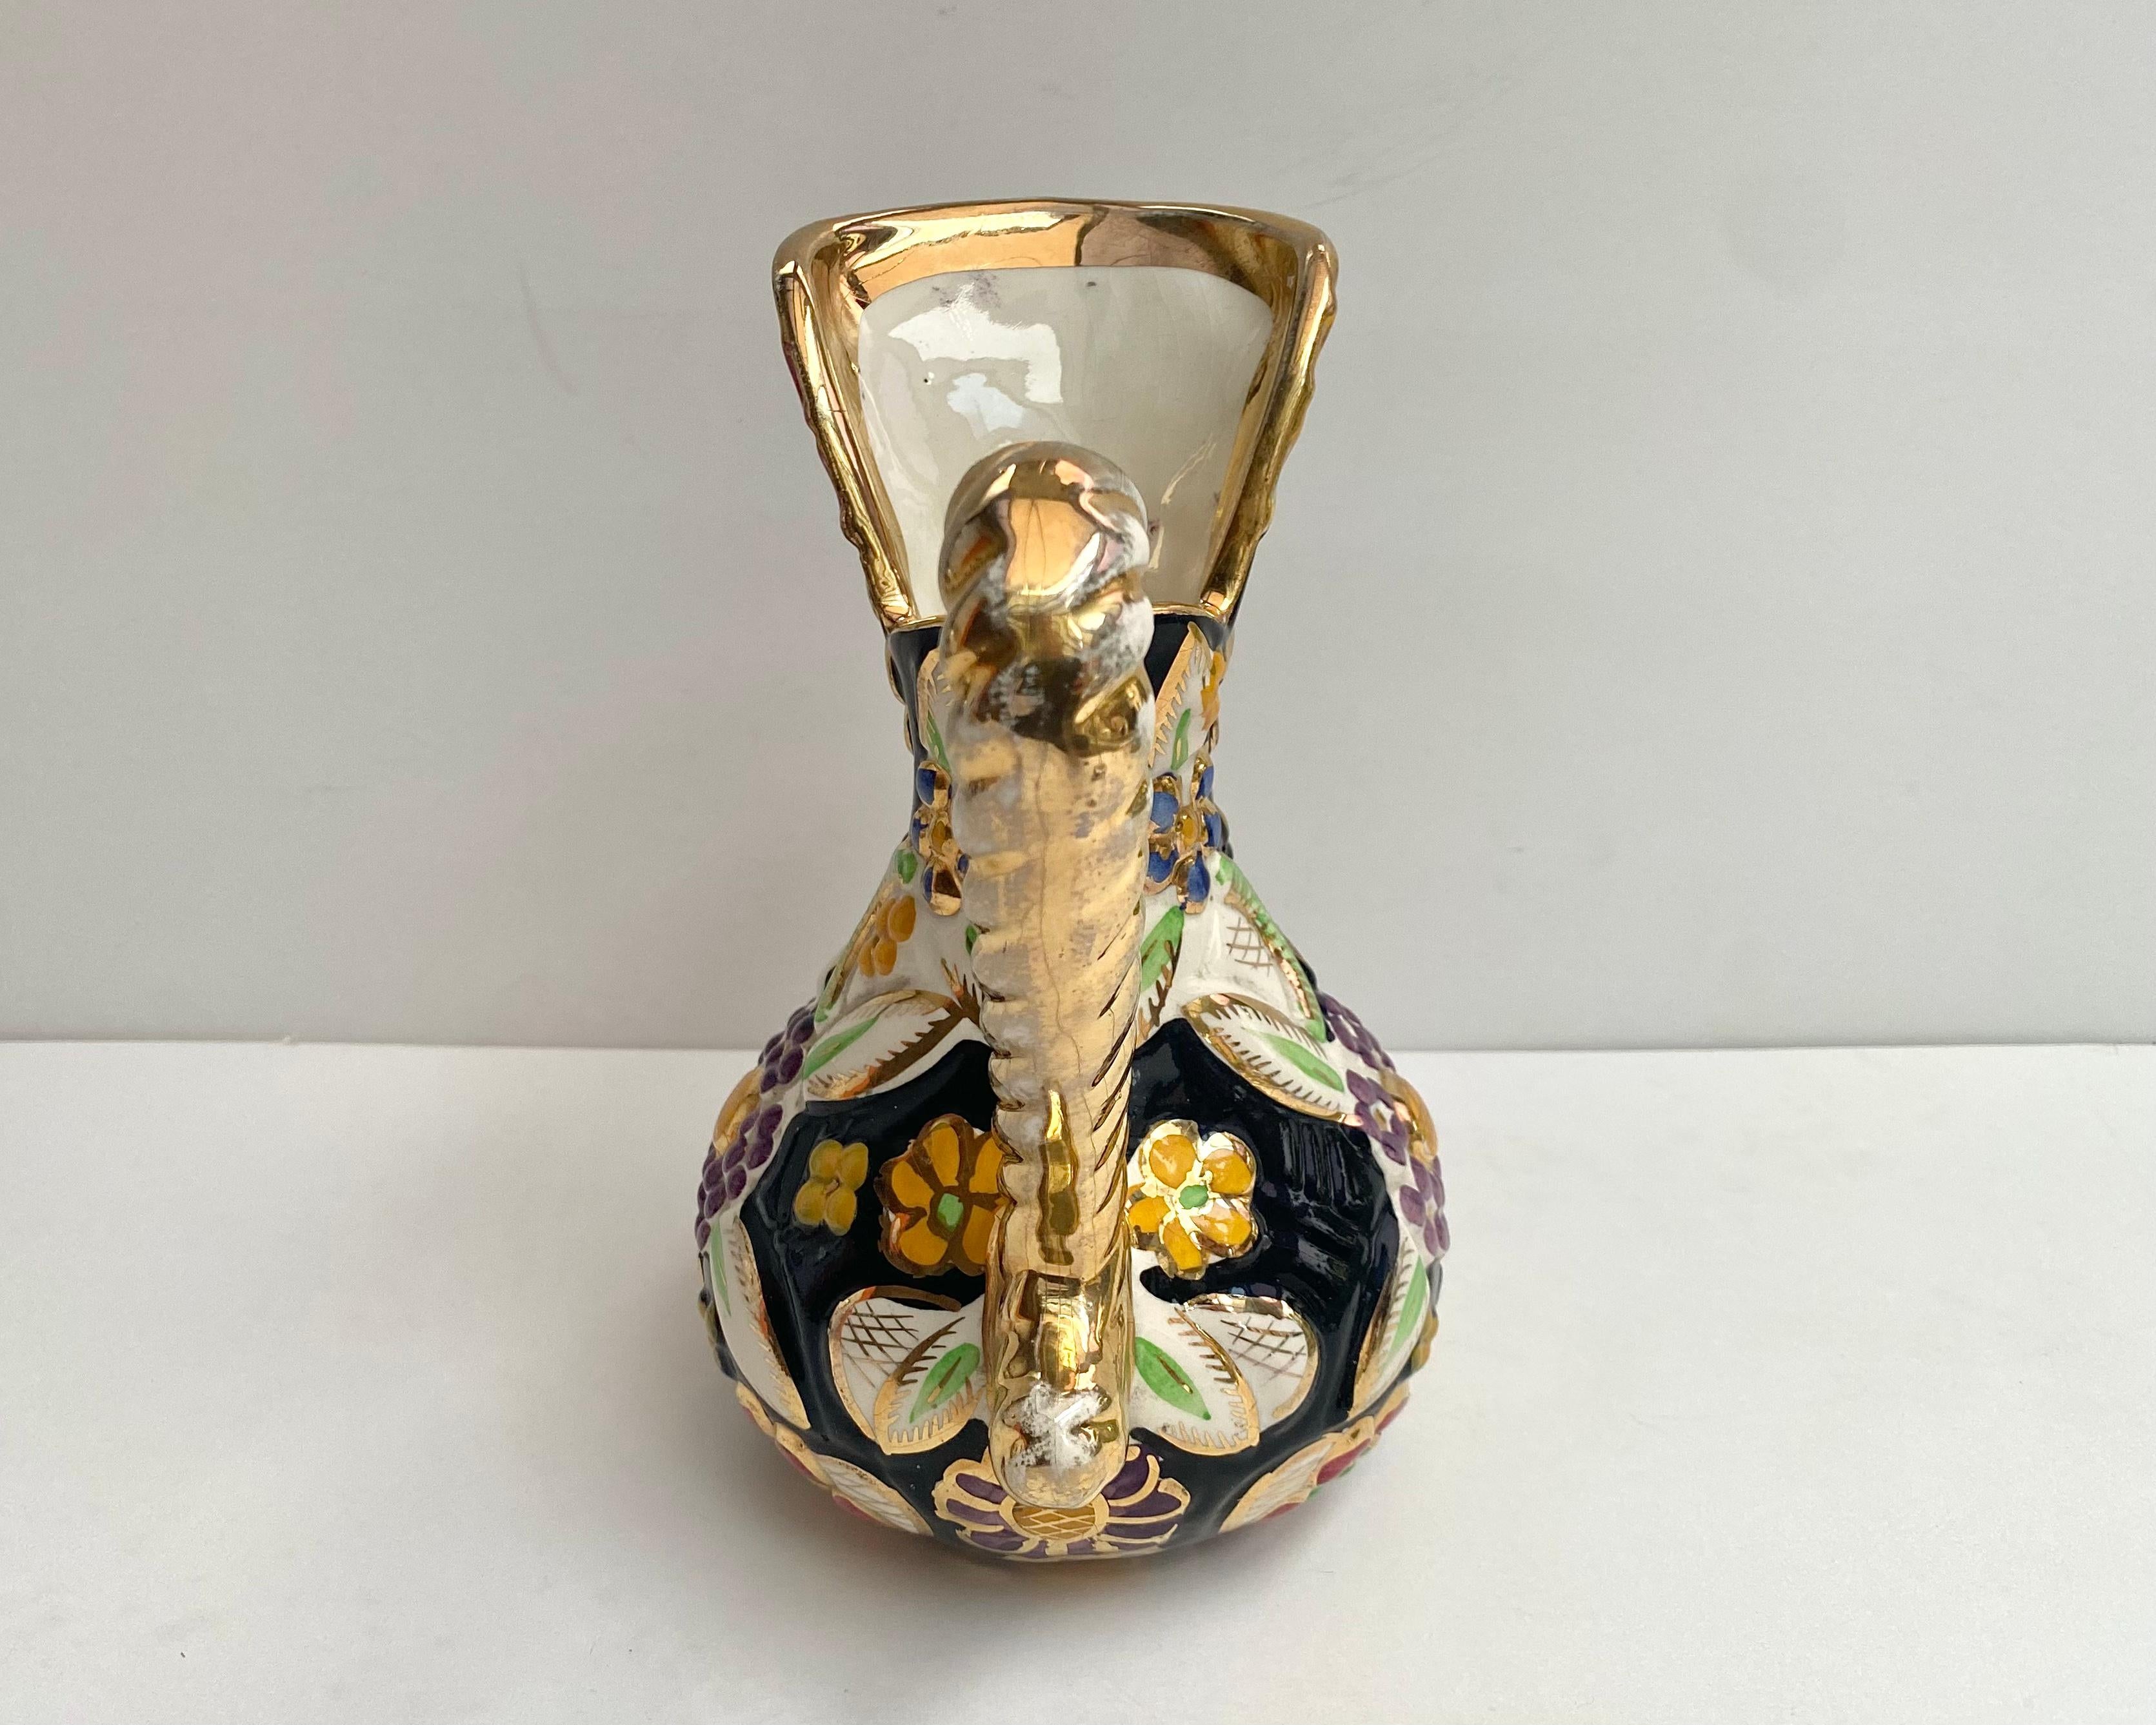 Gold Plate Vase Enamelled Ceramic Vintage Pitcher Hubert Bequet Floral Vase Belgium 1950 For Sale